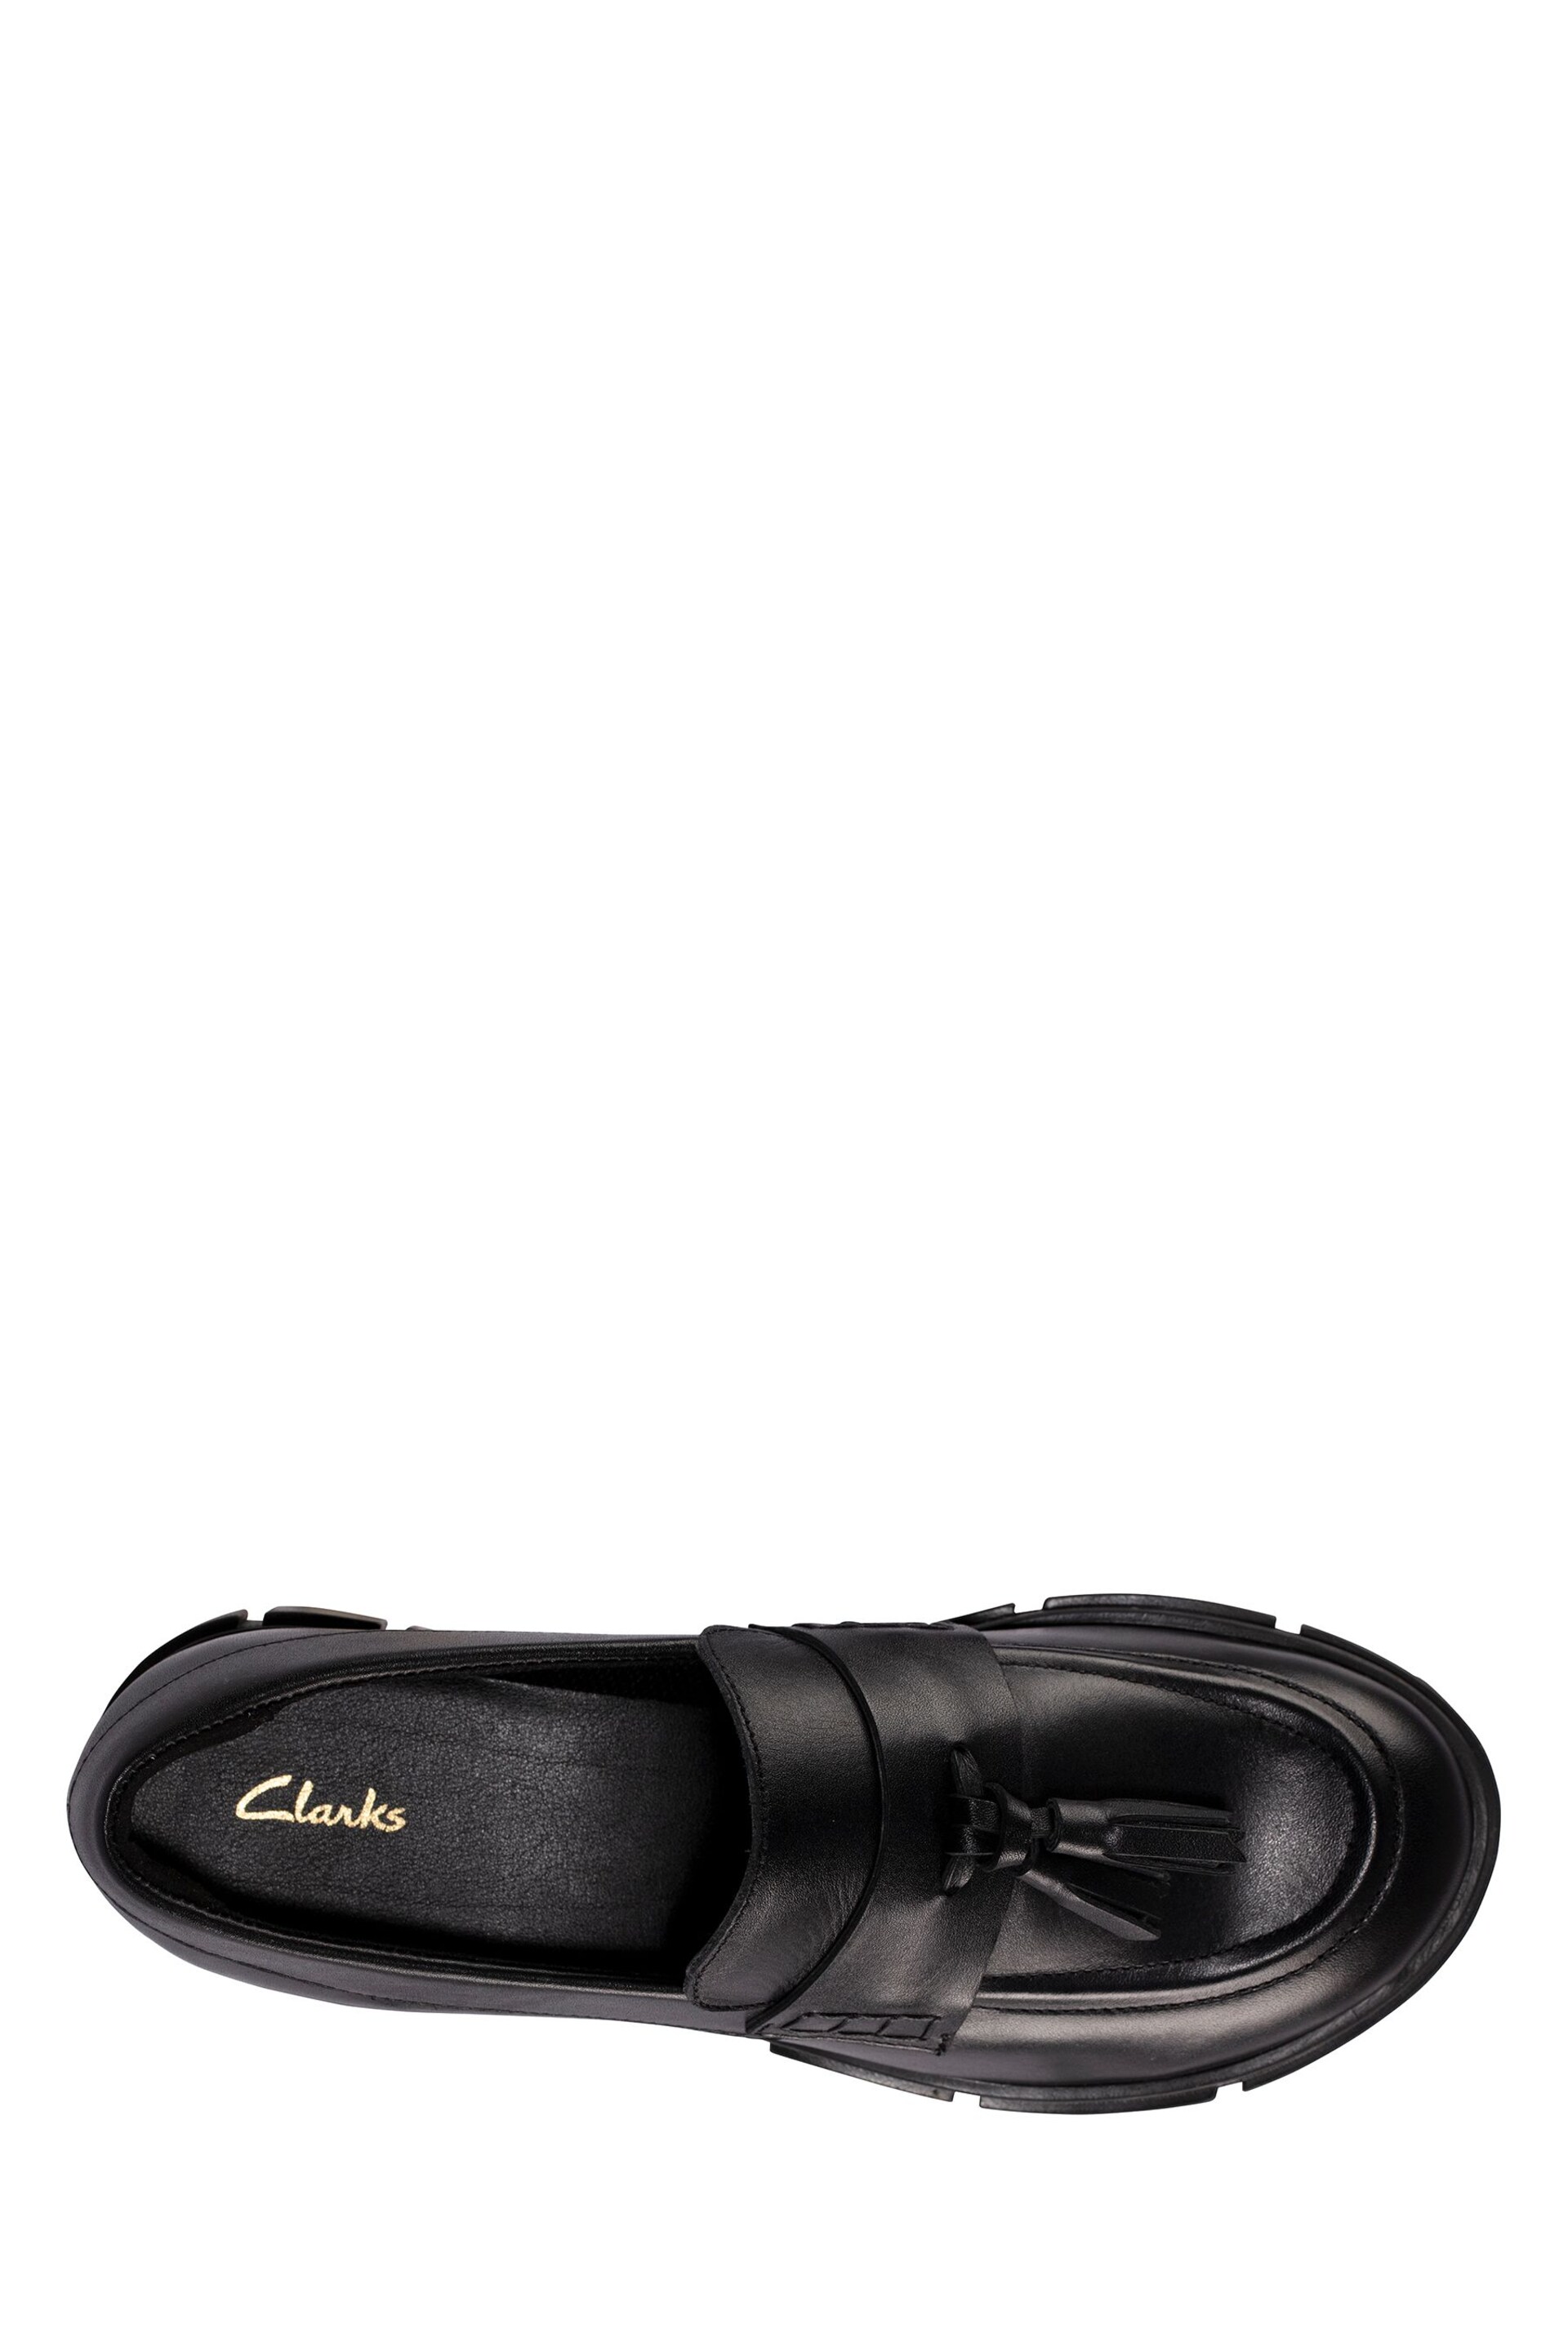 Clarks Black Teala Loafer Shoes - Image 6 of 7